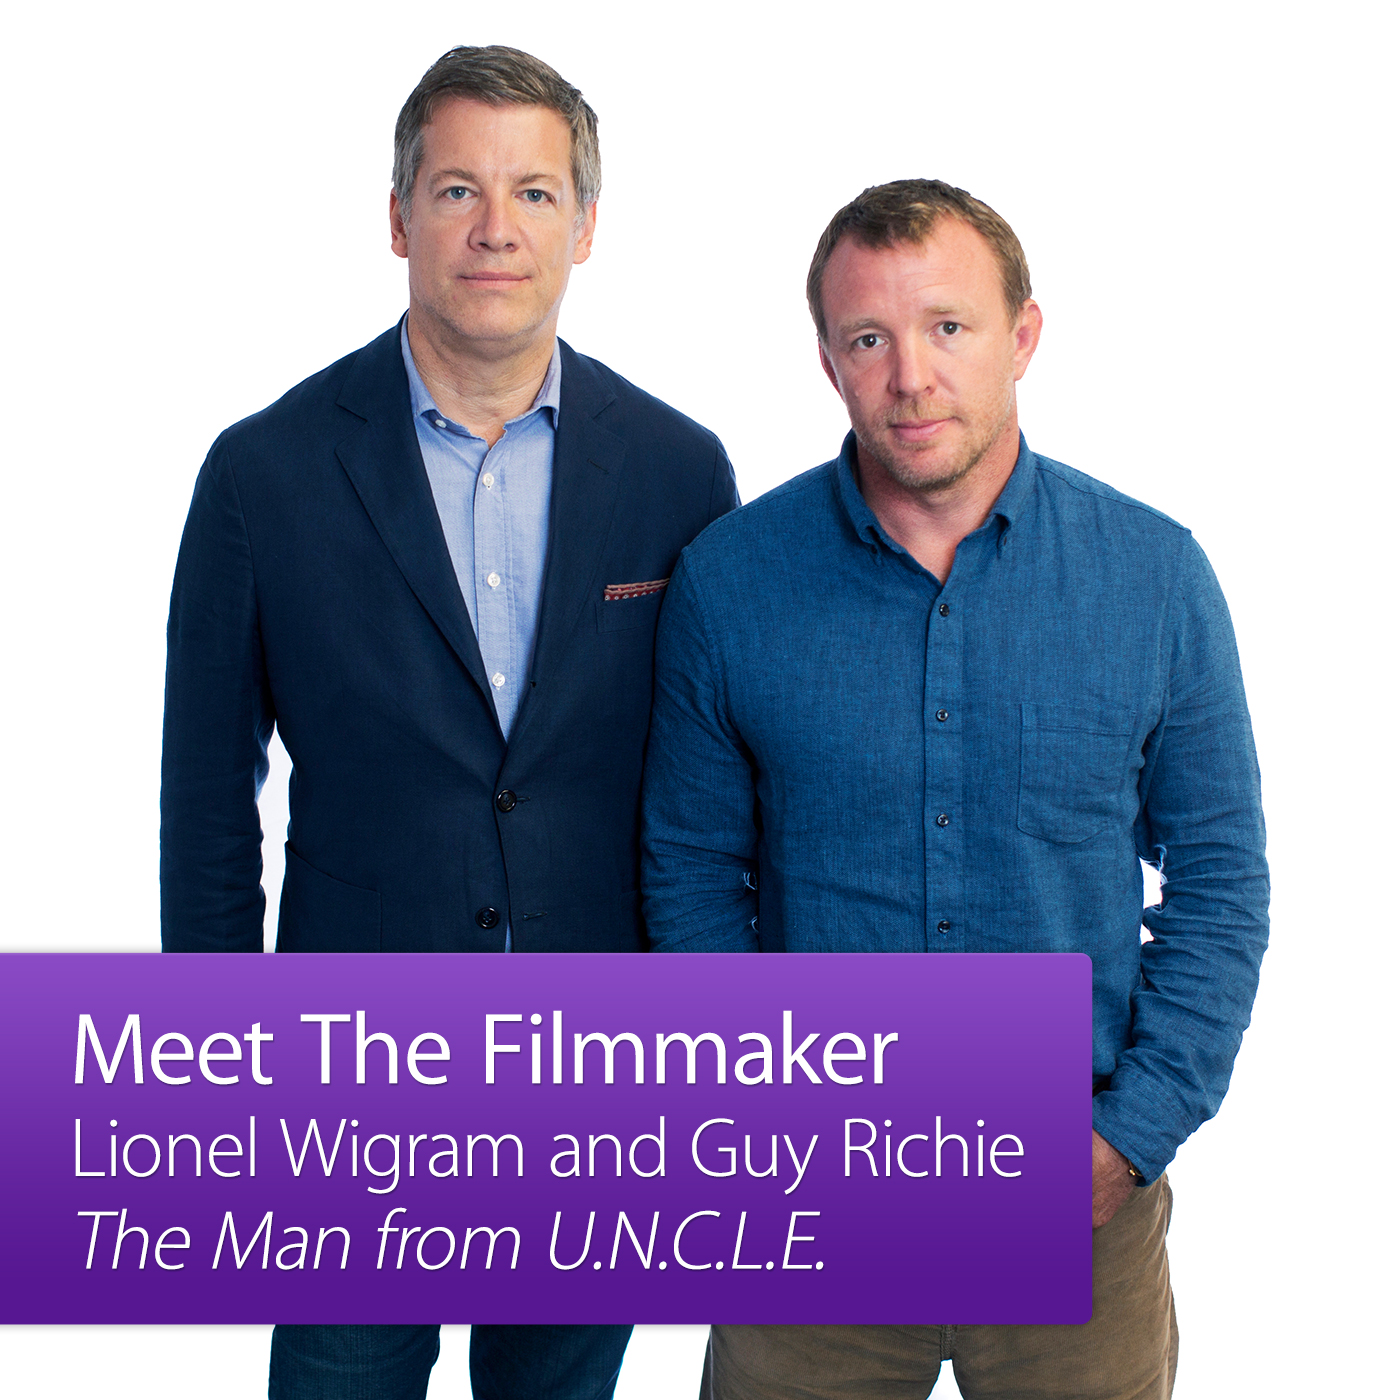 The Man from U.N.C.L.E.: Meet the Filmmaker